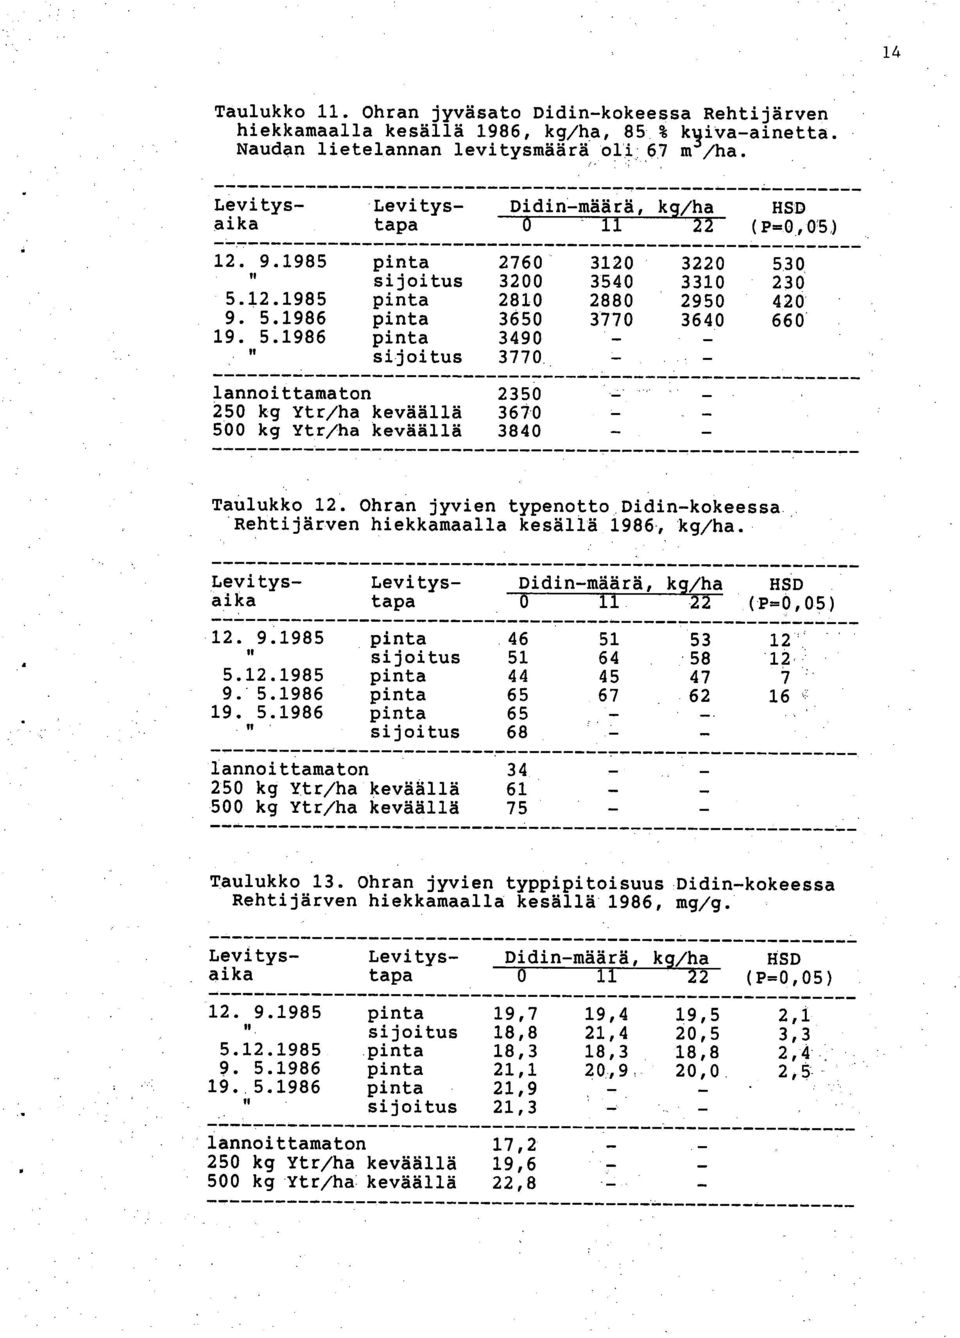 5.1986 pinta 3490 II sijoitus 3770 lannoittamaton 2350 250 kg Ytr/ha keväällä 367.0 500 kg Ytr/ha keväällä 3840 Taulukko 12.